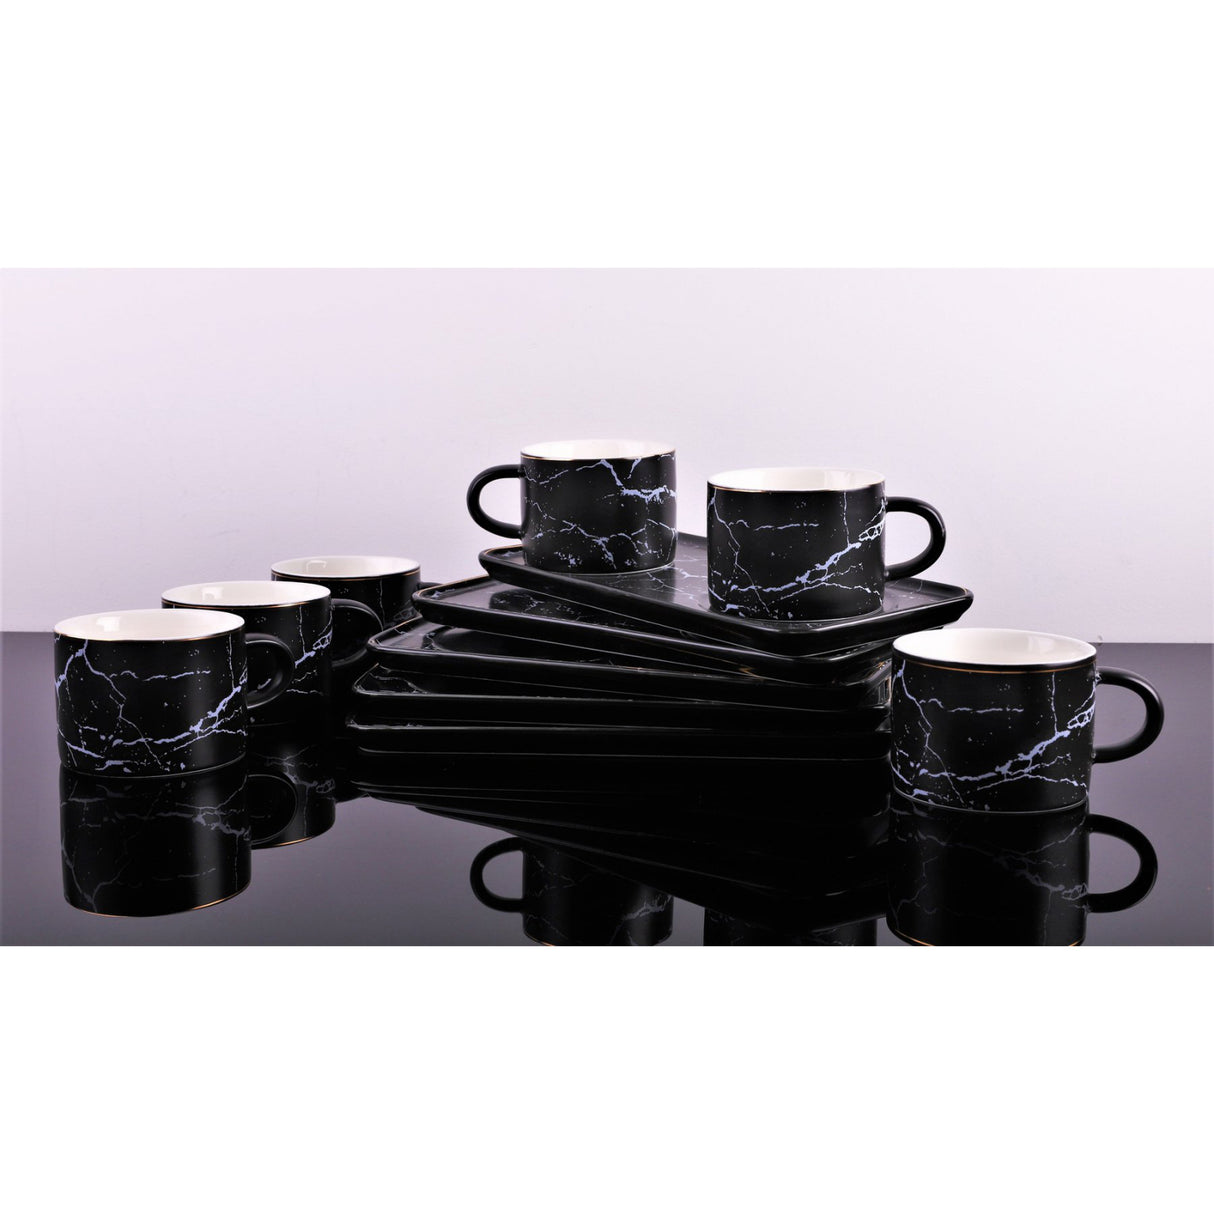 Set 6 cesti Cafea sau Ceai cu farfurioare incluse, Ceramica fina, Model Marmura